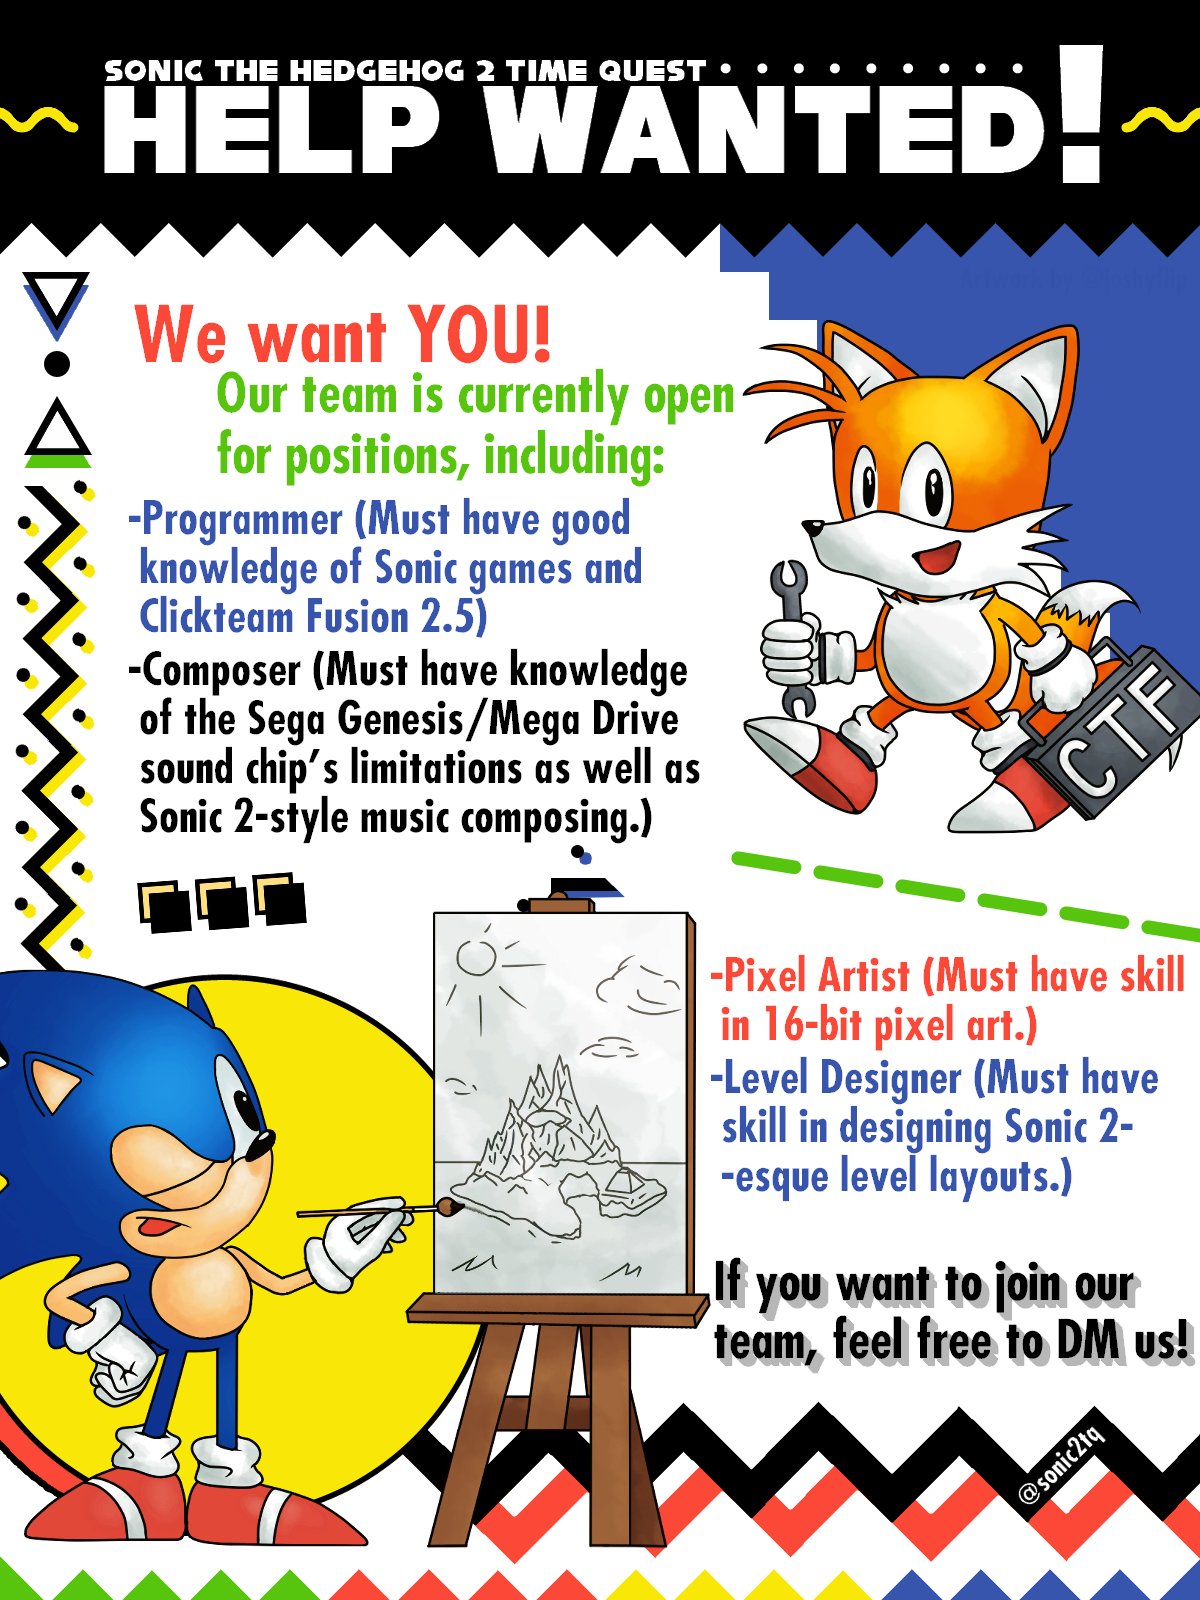 Sonic 2 (Sonic the Hedgehog 2 16 Bits)